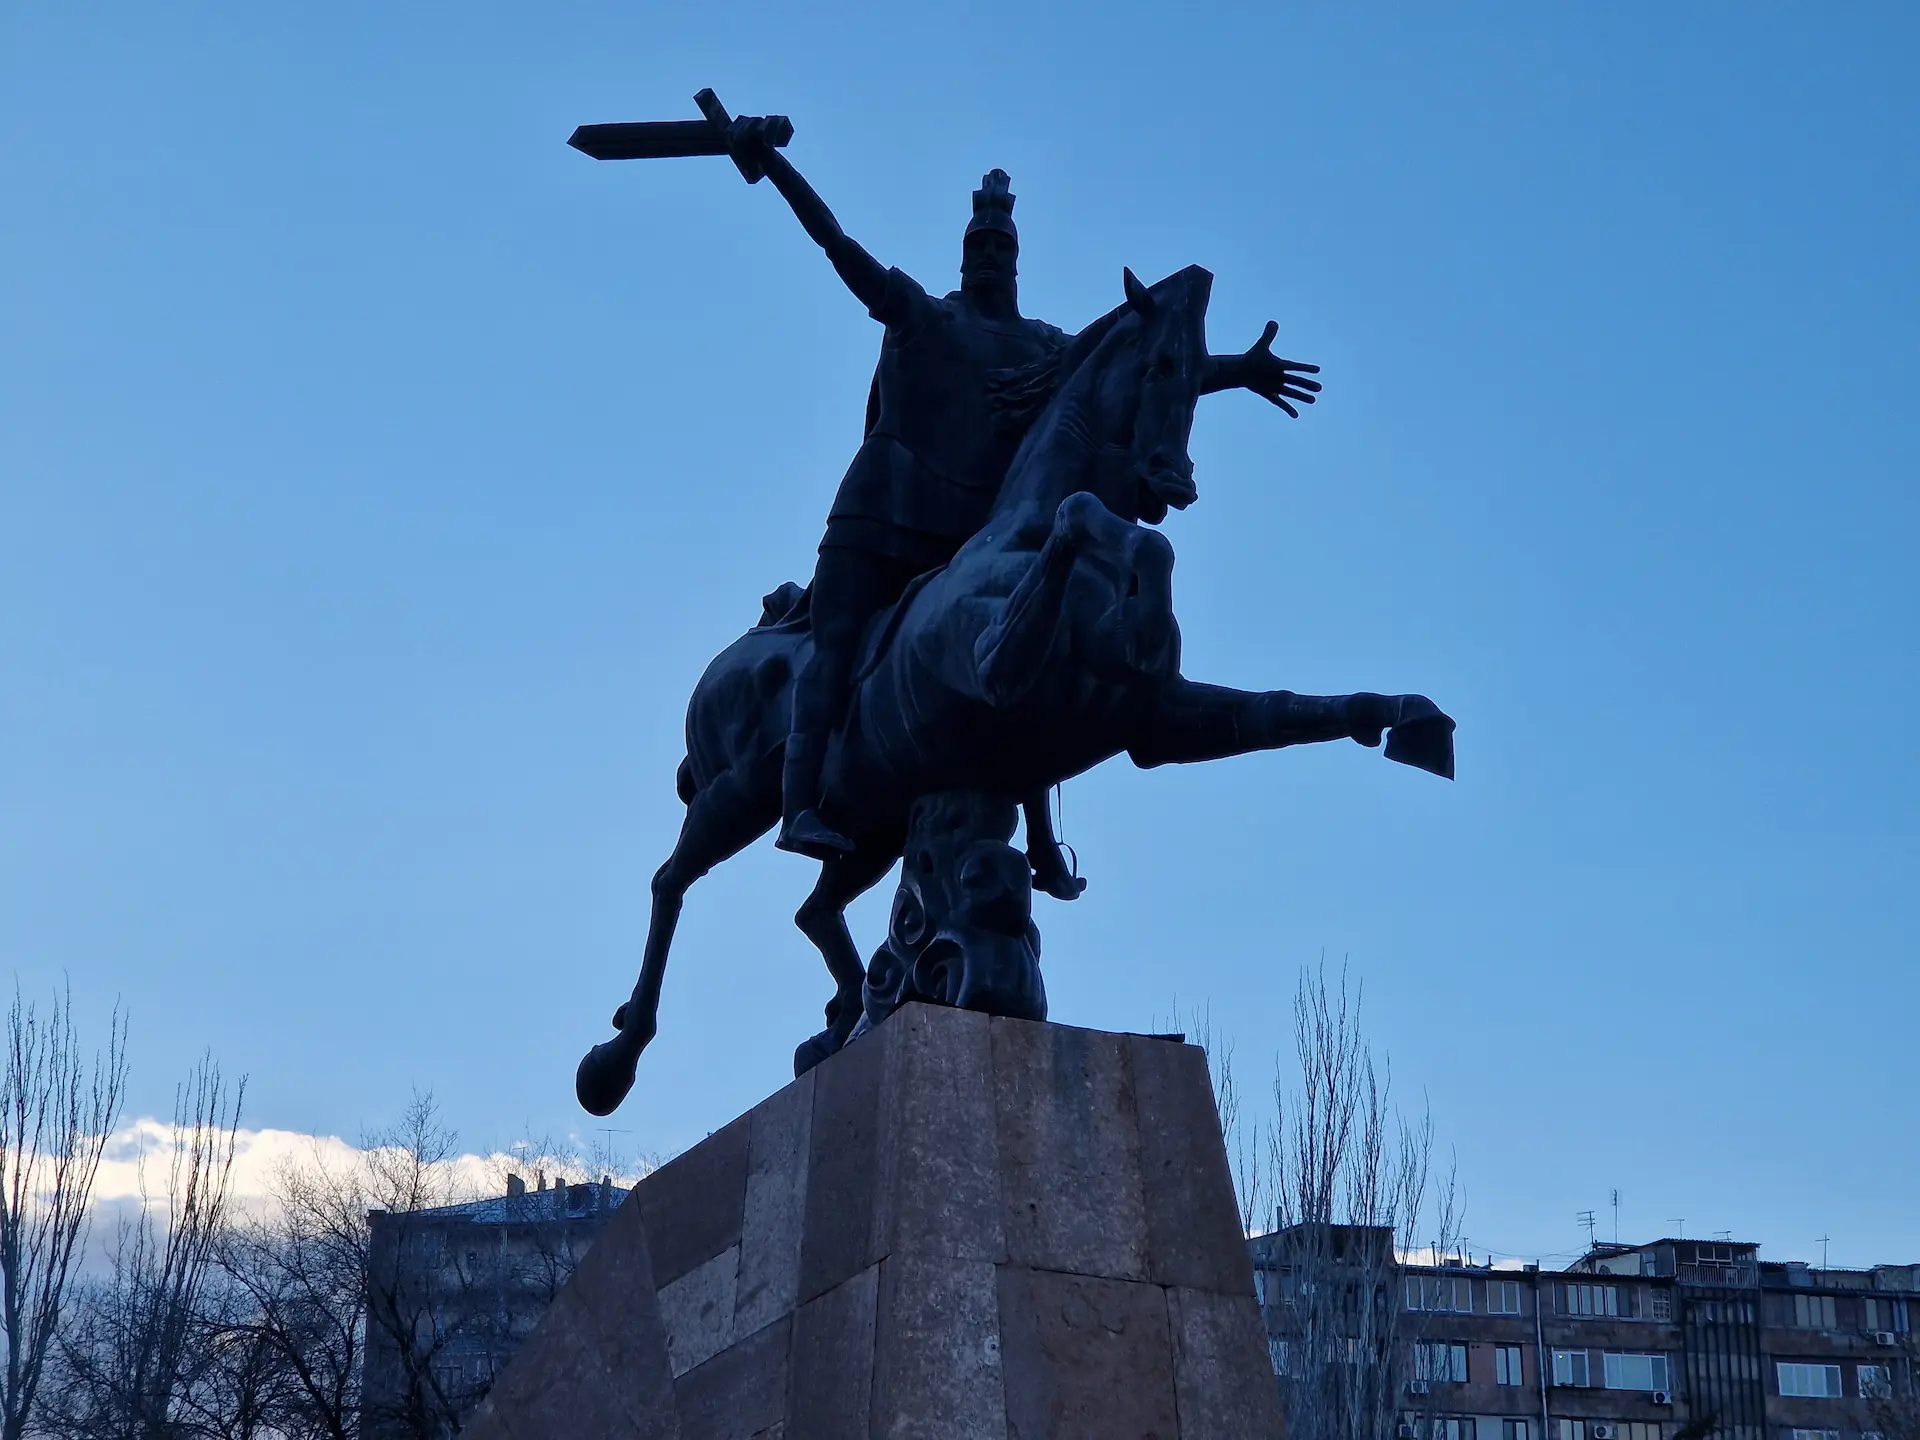 Statue d'un soldat extatique sur son cheval. Il a les bras écarté, son épée qui part vers l'arrière dans sa main droite.